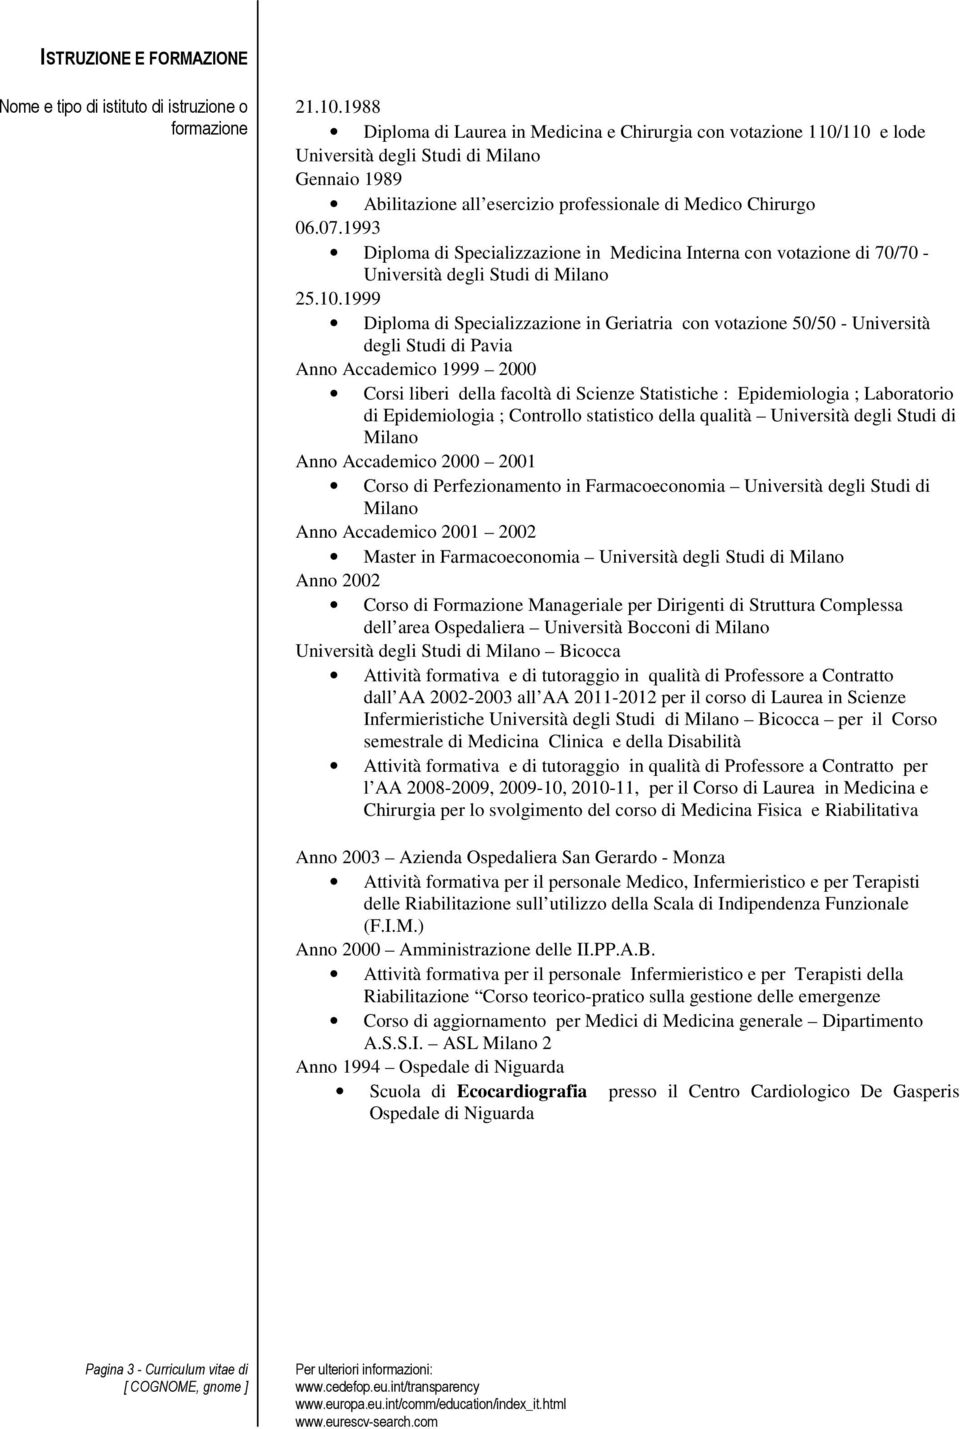 1993 Diploma di Specializzazione in Medicina Interna con votazione di 70/70 - Università degli Studi di Milano 25.10.